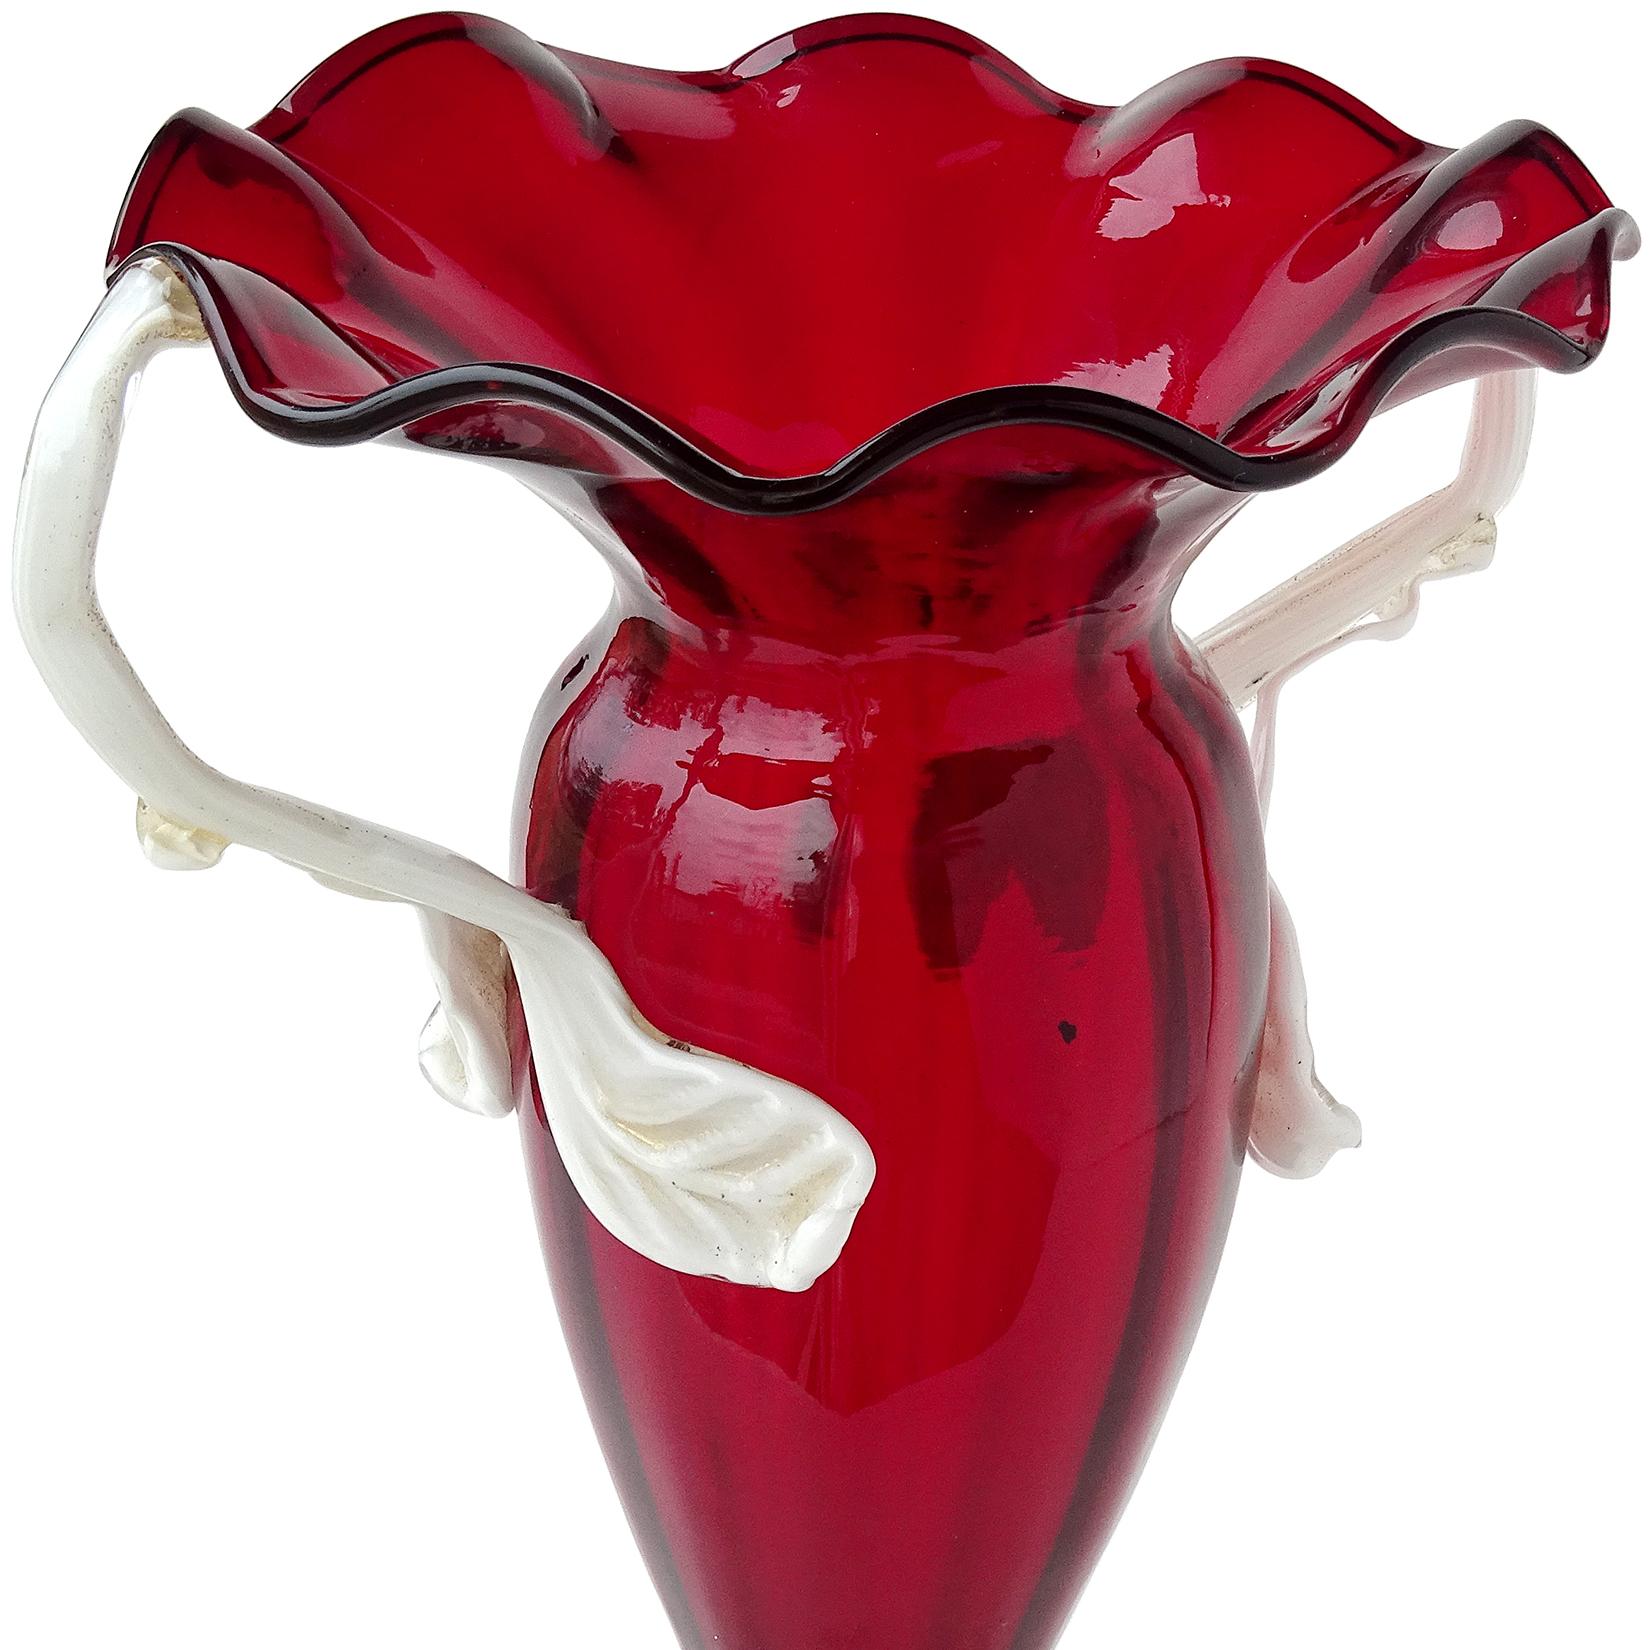 Magnifique vase antique en verre soufflé à la main de Murano, de couleur rouge riche, avec une poignée décorée de feuilles blanches saupoudrées d'or. Documenté et étiqueté comme Artistica Soffiera Vetreria - Barovier Seguso Ferro. L'entreprise n'a